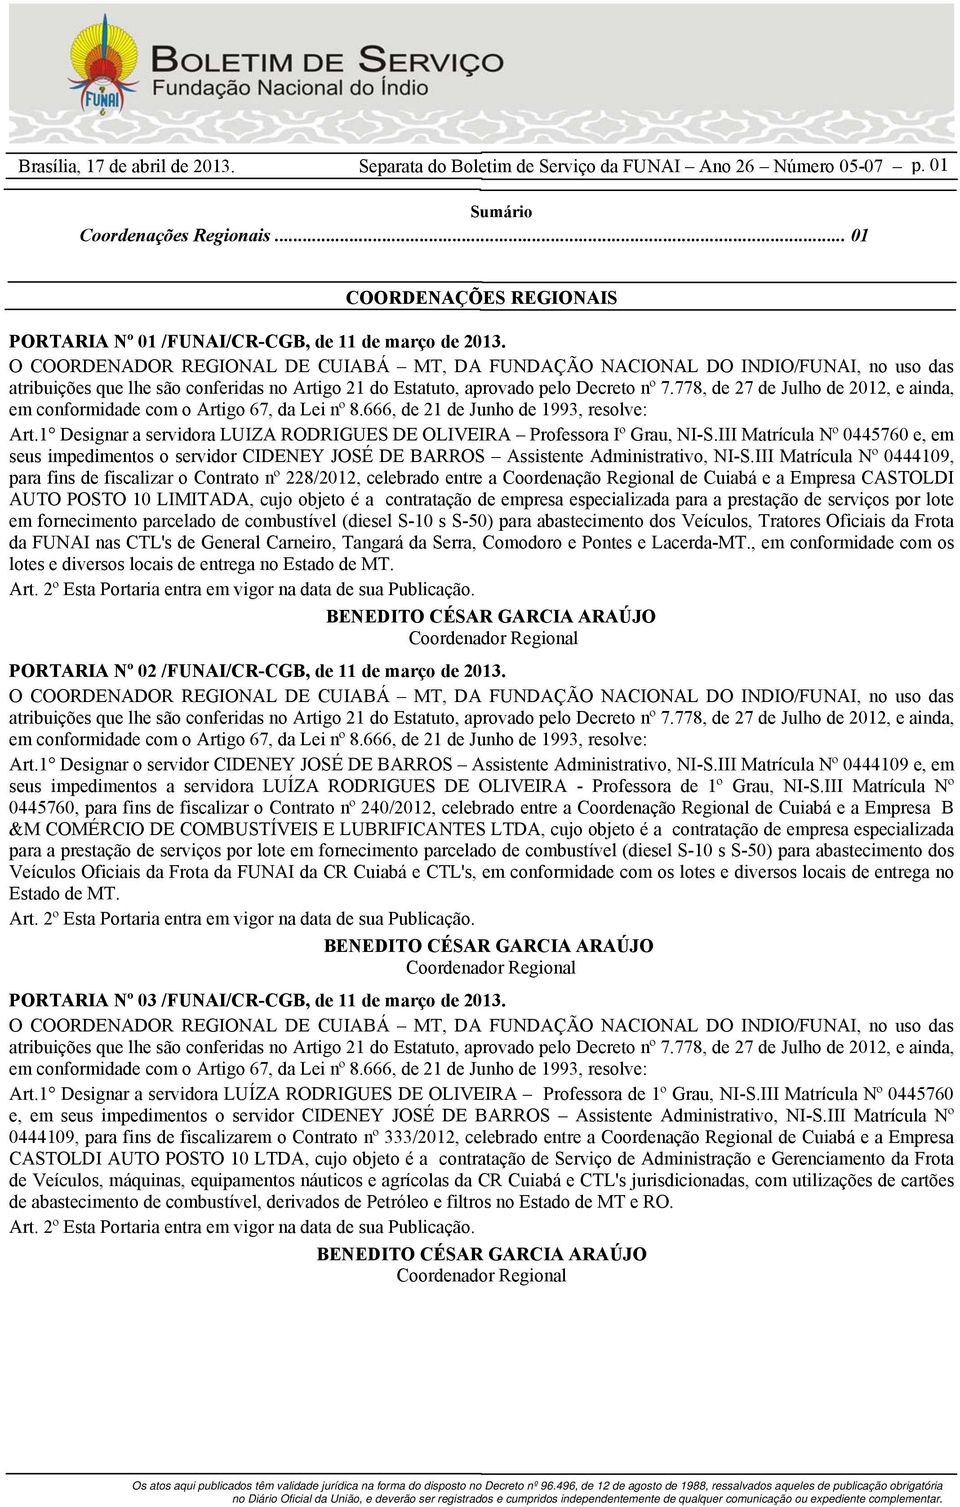 III Matrícula Nº 0444109, para fins de fiscalizar o Contrato nº 228/2012, celebrado entre a Coordenação Regional de Cuiabá e a Empresa CASTOLDI AUTO POSTO 10 LIMITADA, cujo objeto é a contratação de